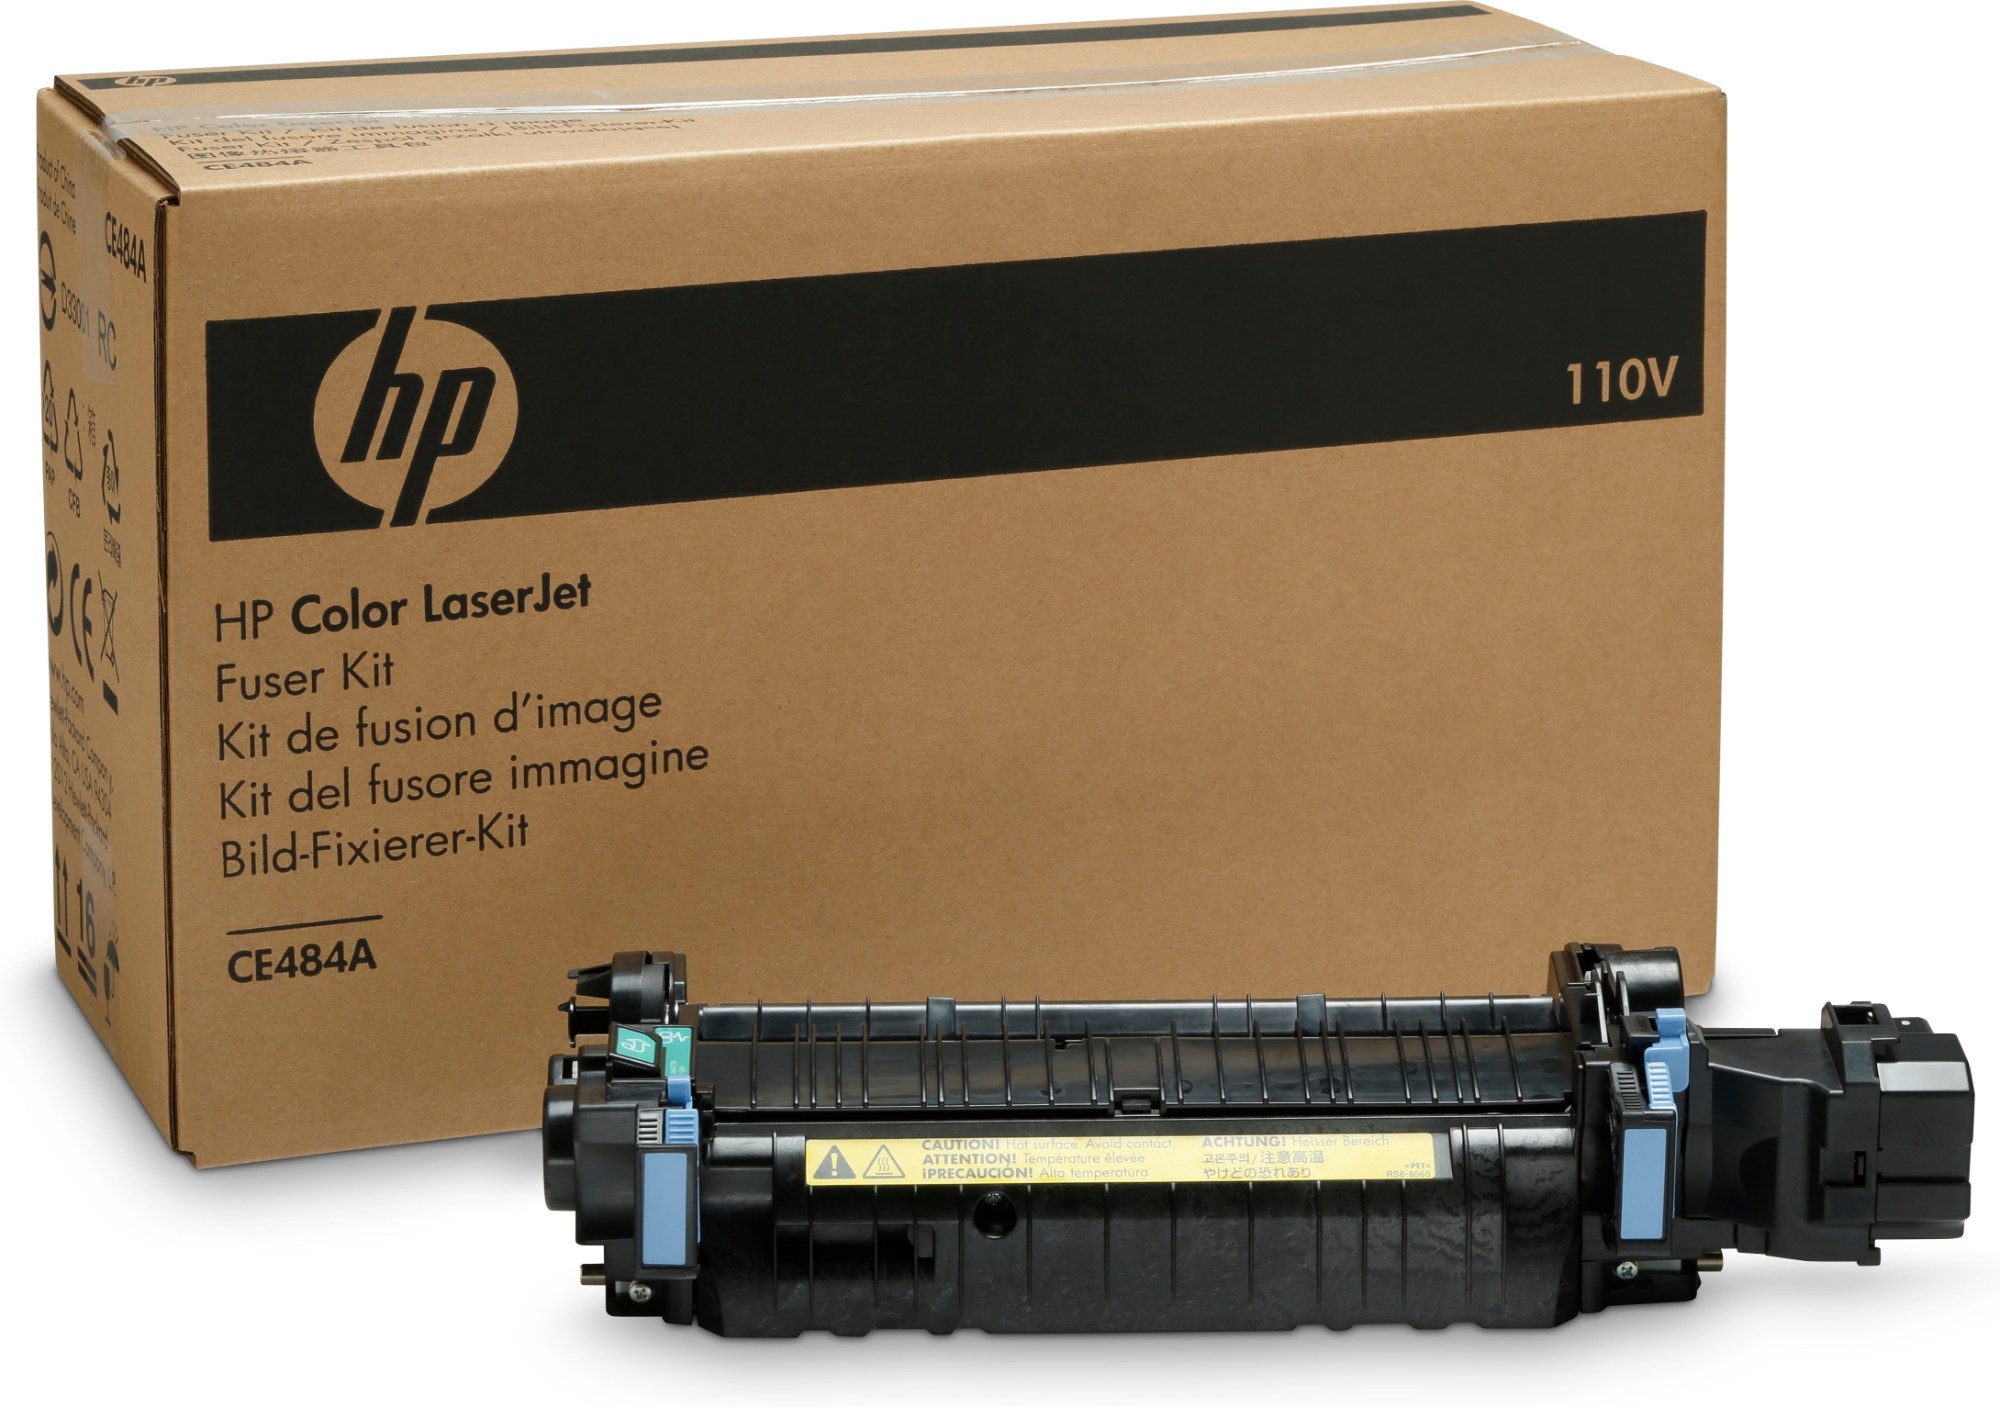 HP Color LaserJet 220V Fuser Kit CE506A